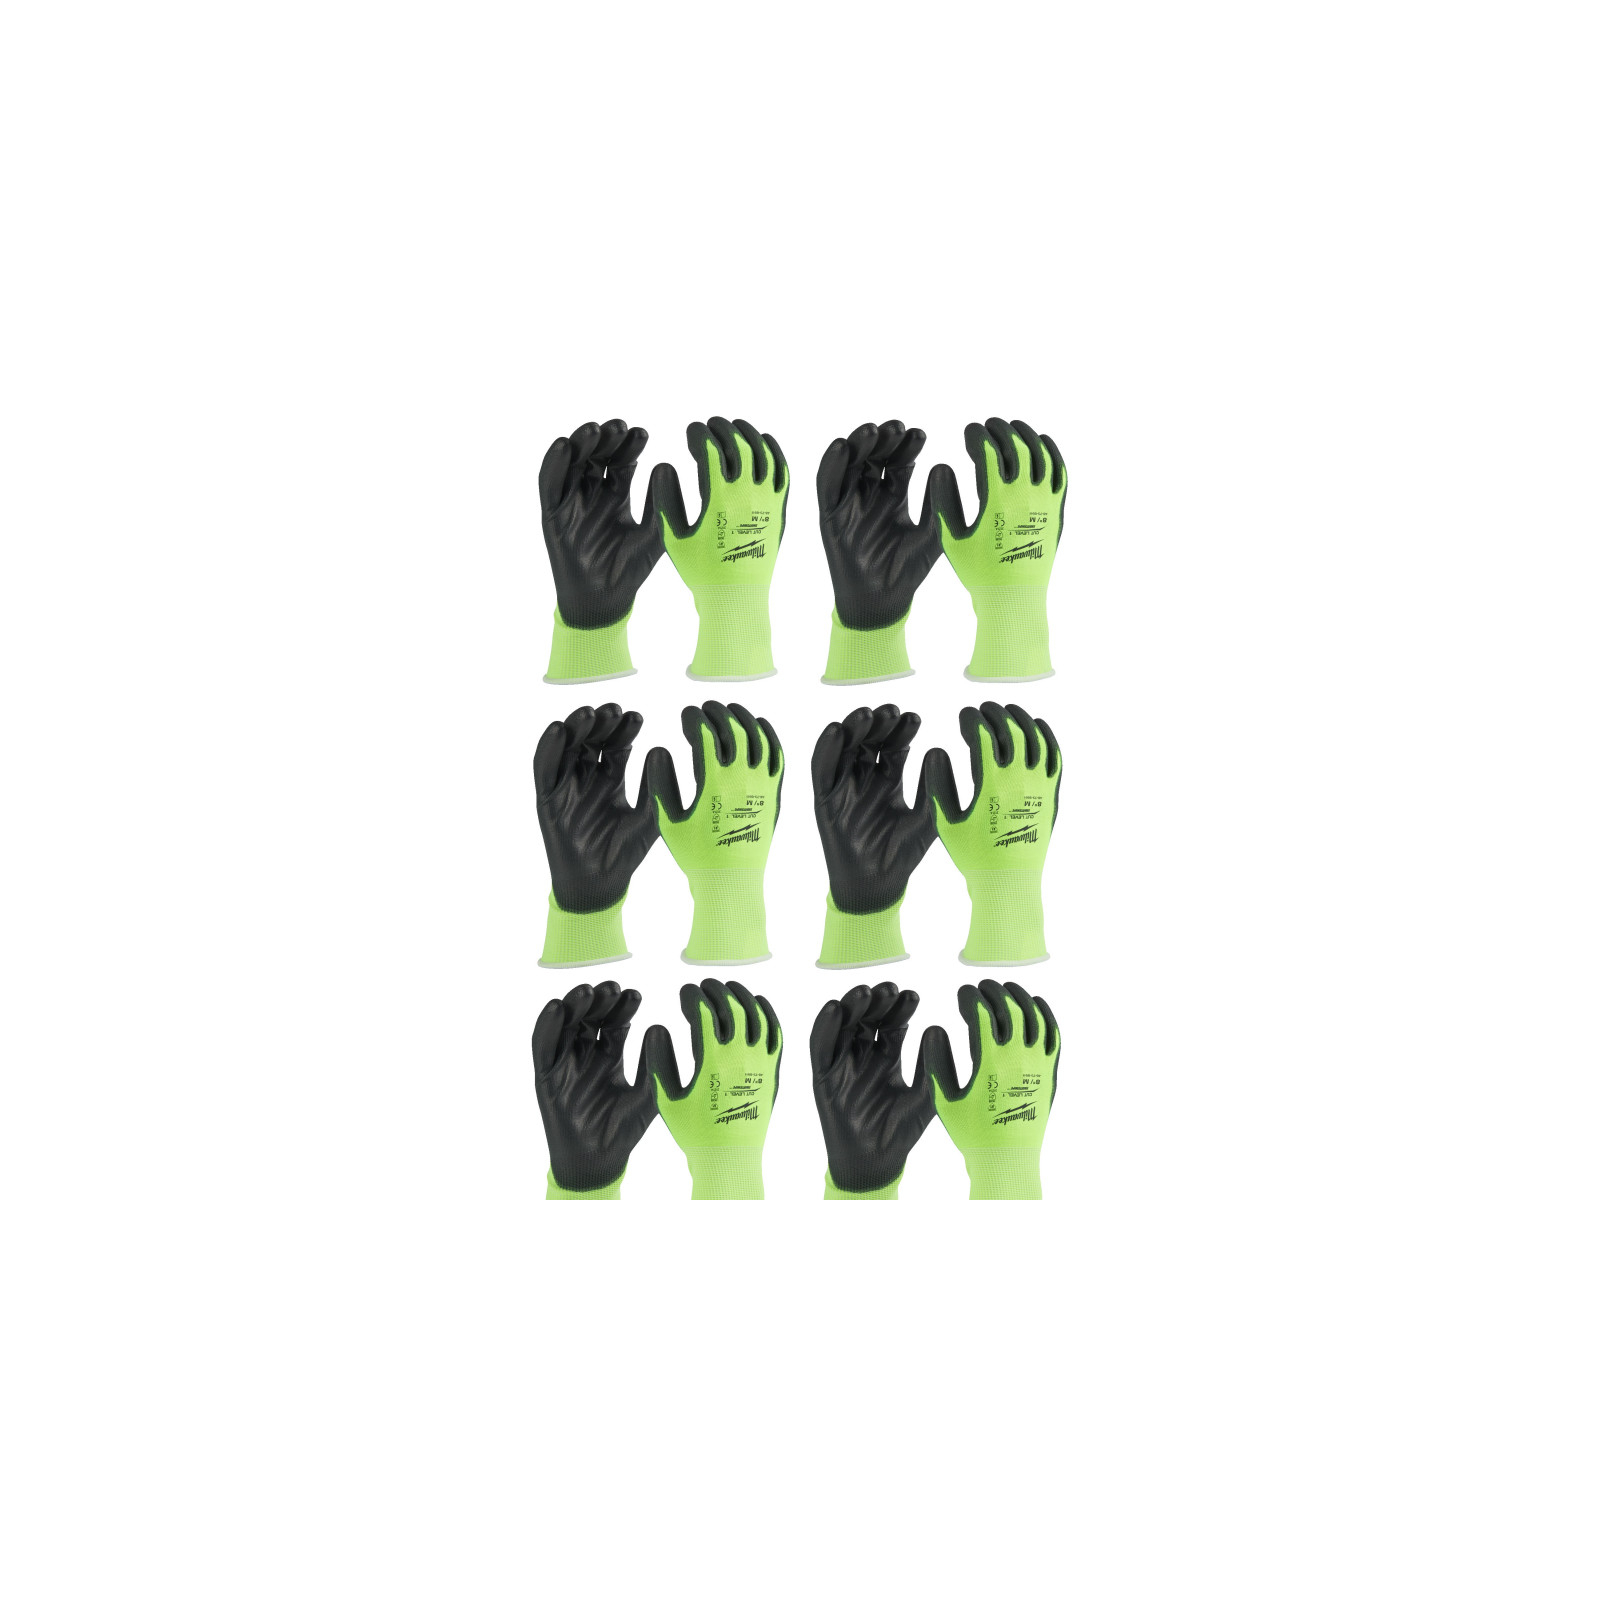 Защитные перчатки Milwaukee Hi-Vis Cut размер M/8, 12 пар (4932492914)